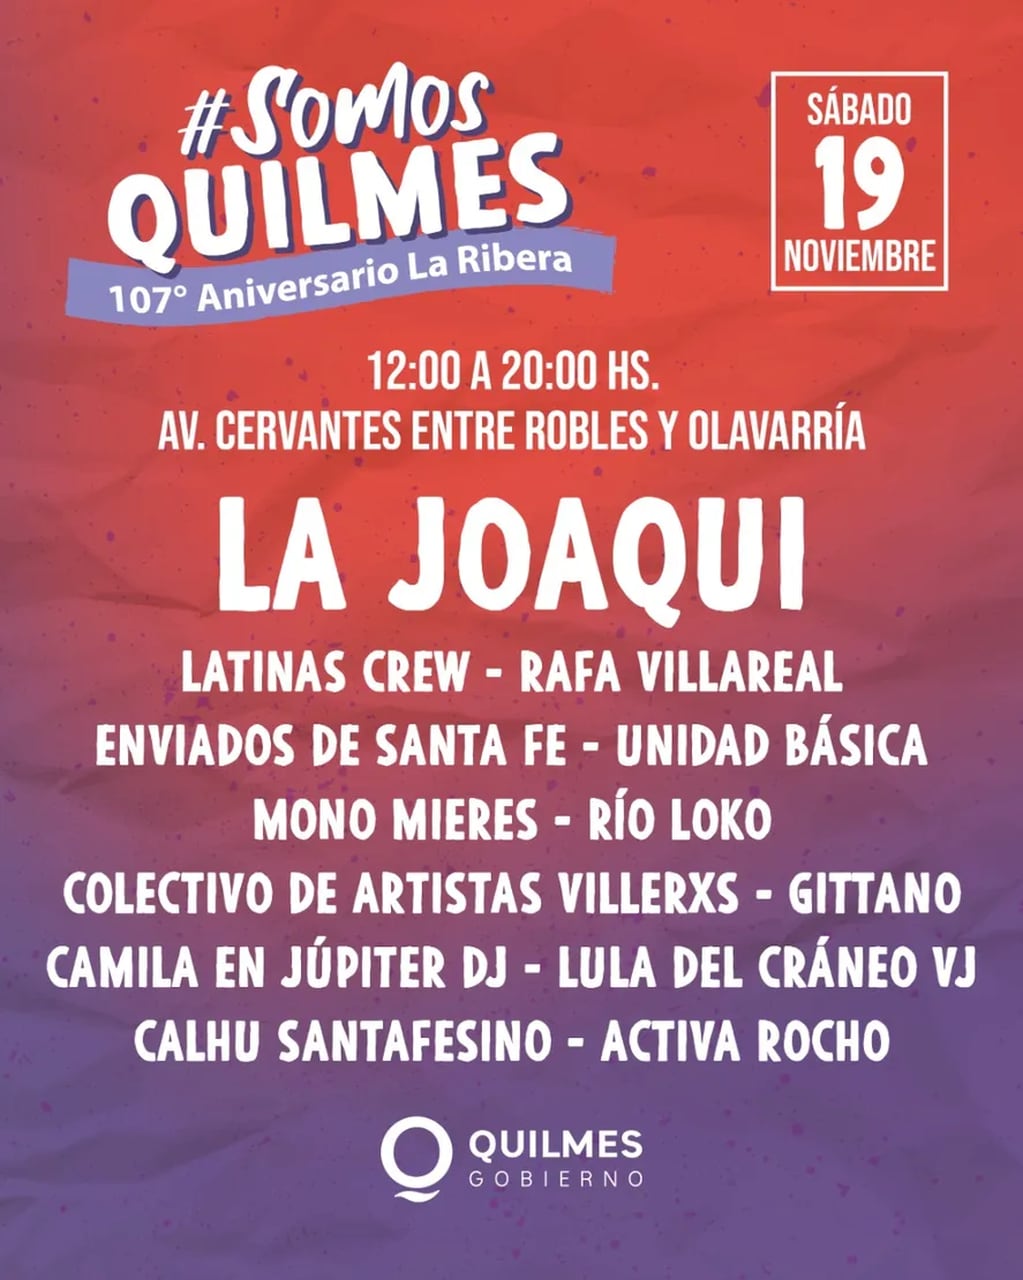 La Joaqui dará un show gratis en Quilmes por el aniversario de La Ribera